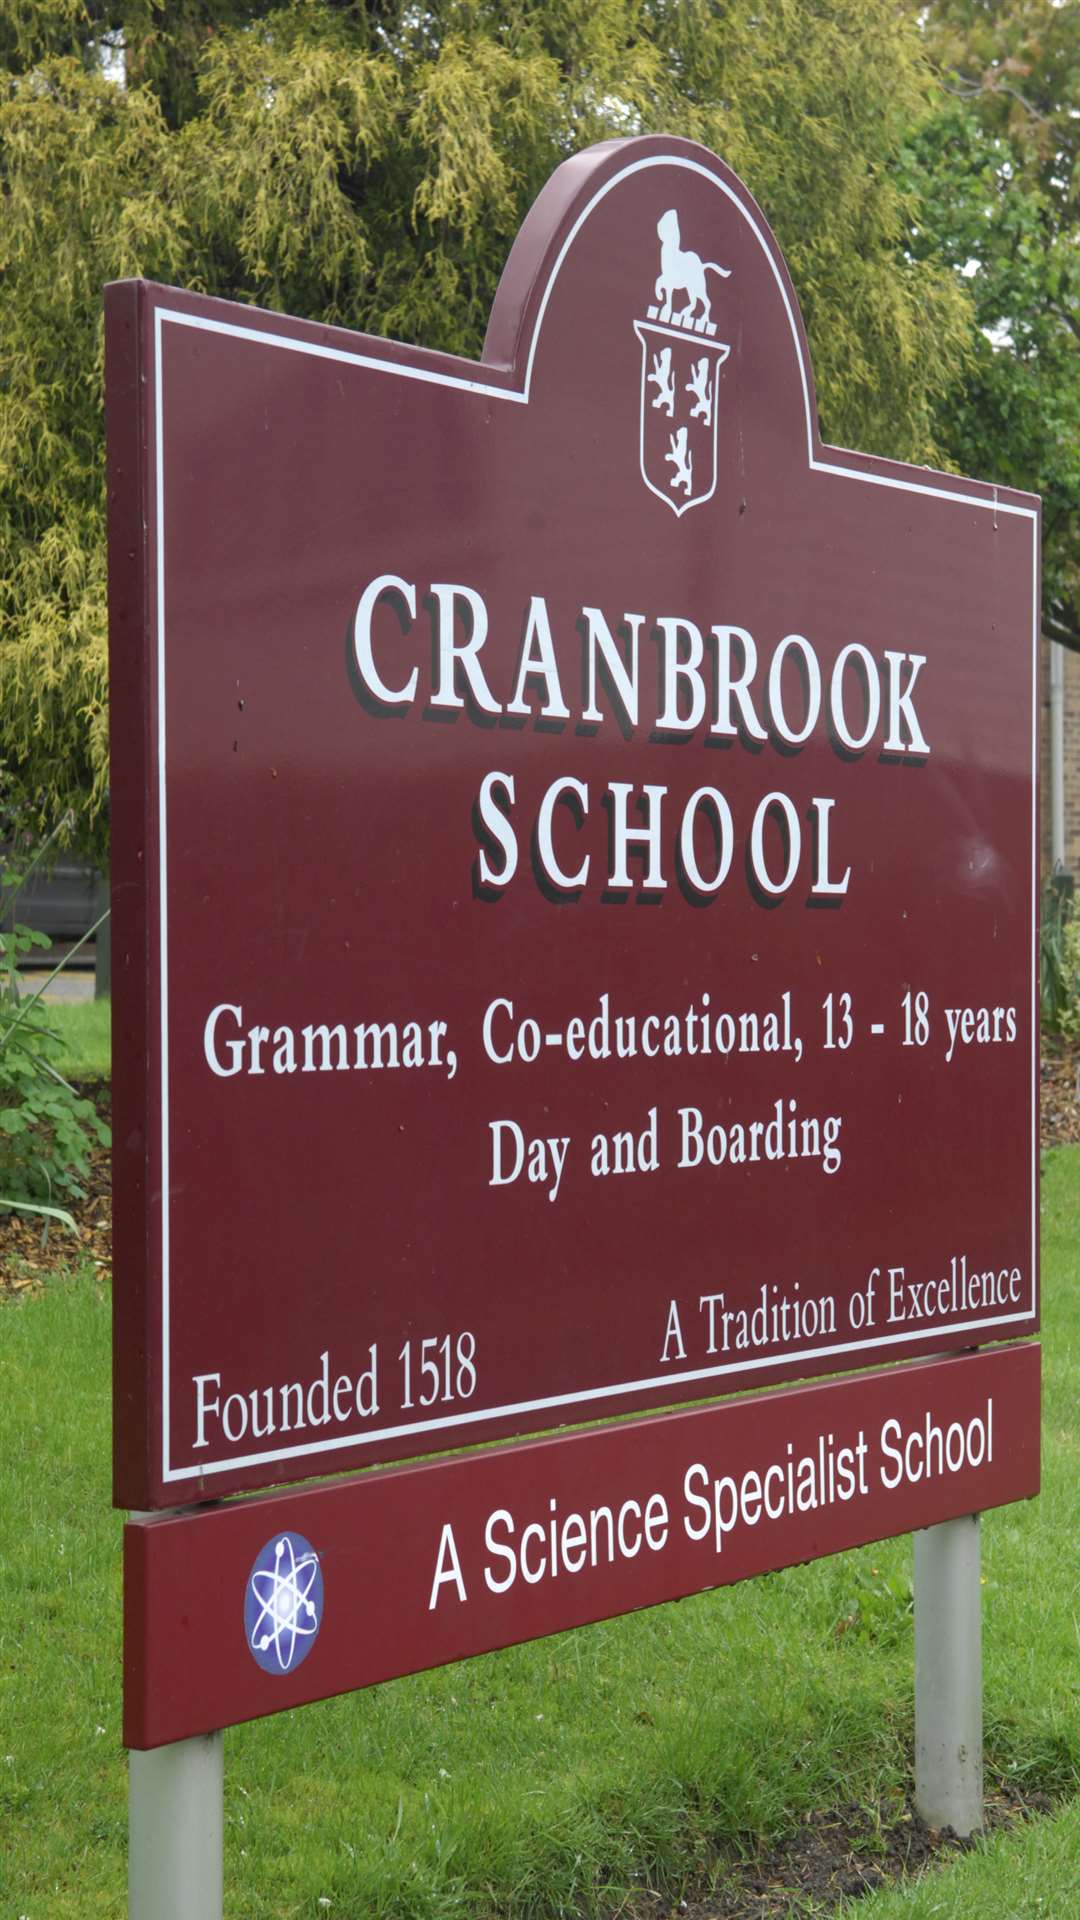 The mixed grammar school in Cranbrook